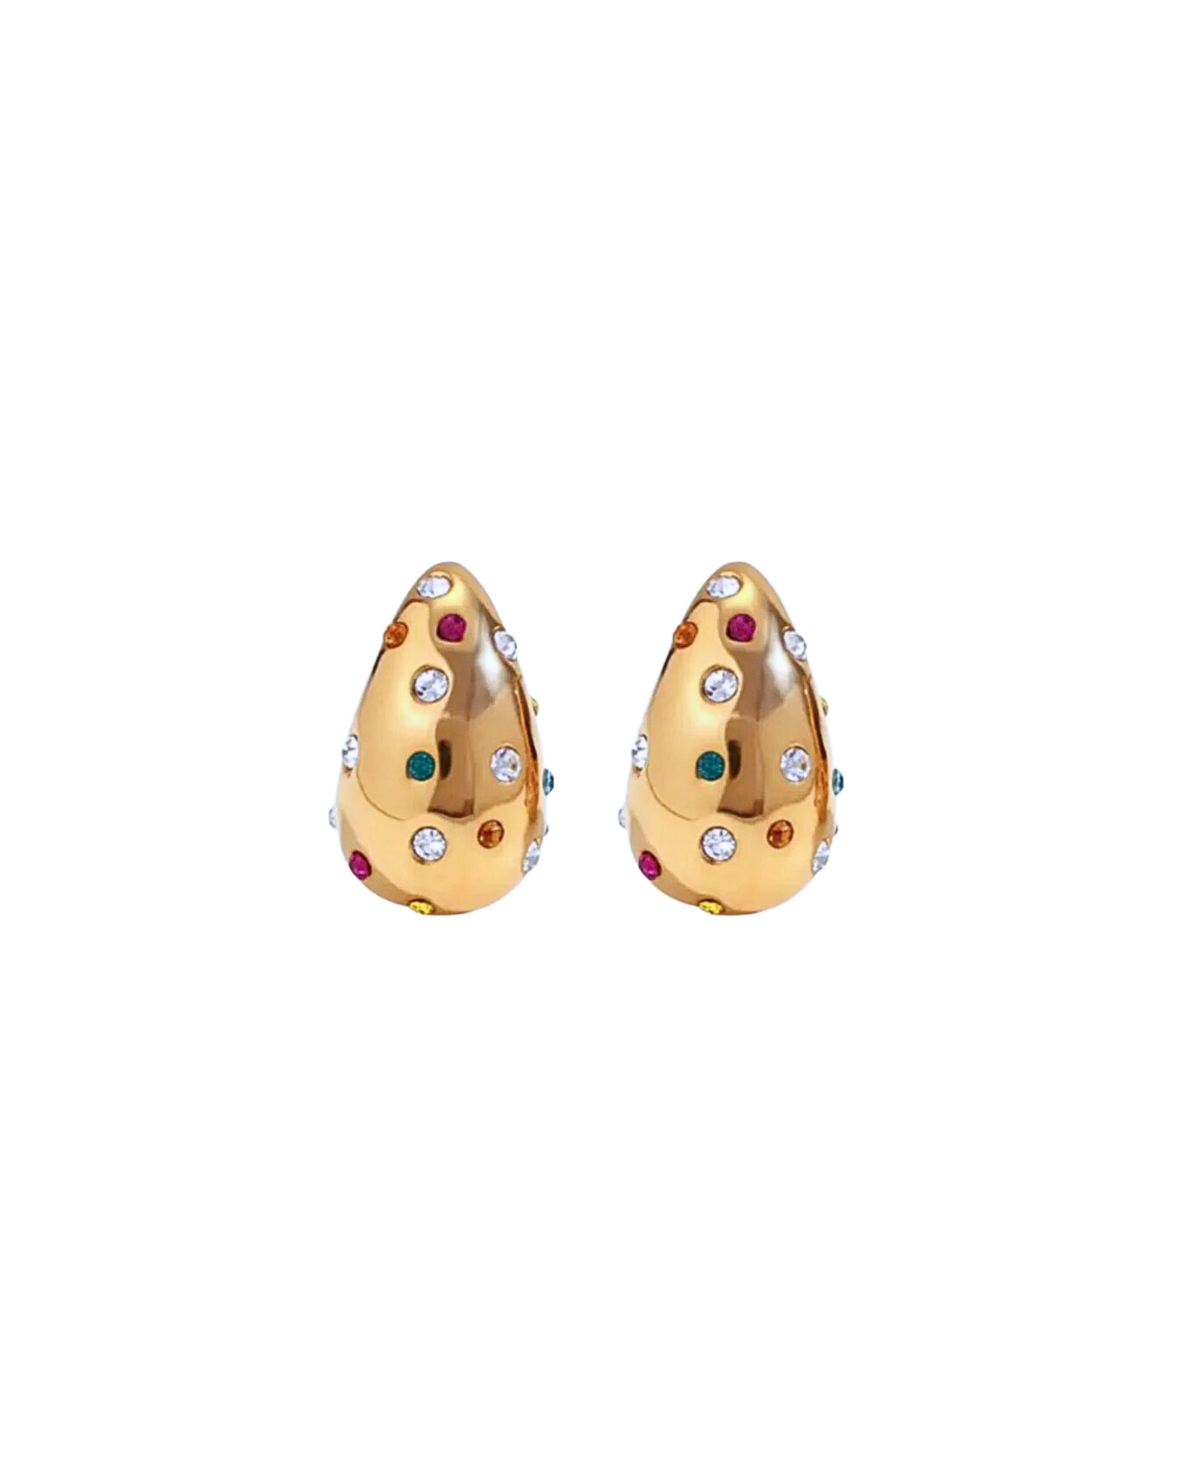 Gemstone Teardrop Earrings - Multicolor